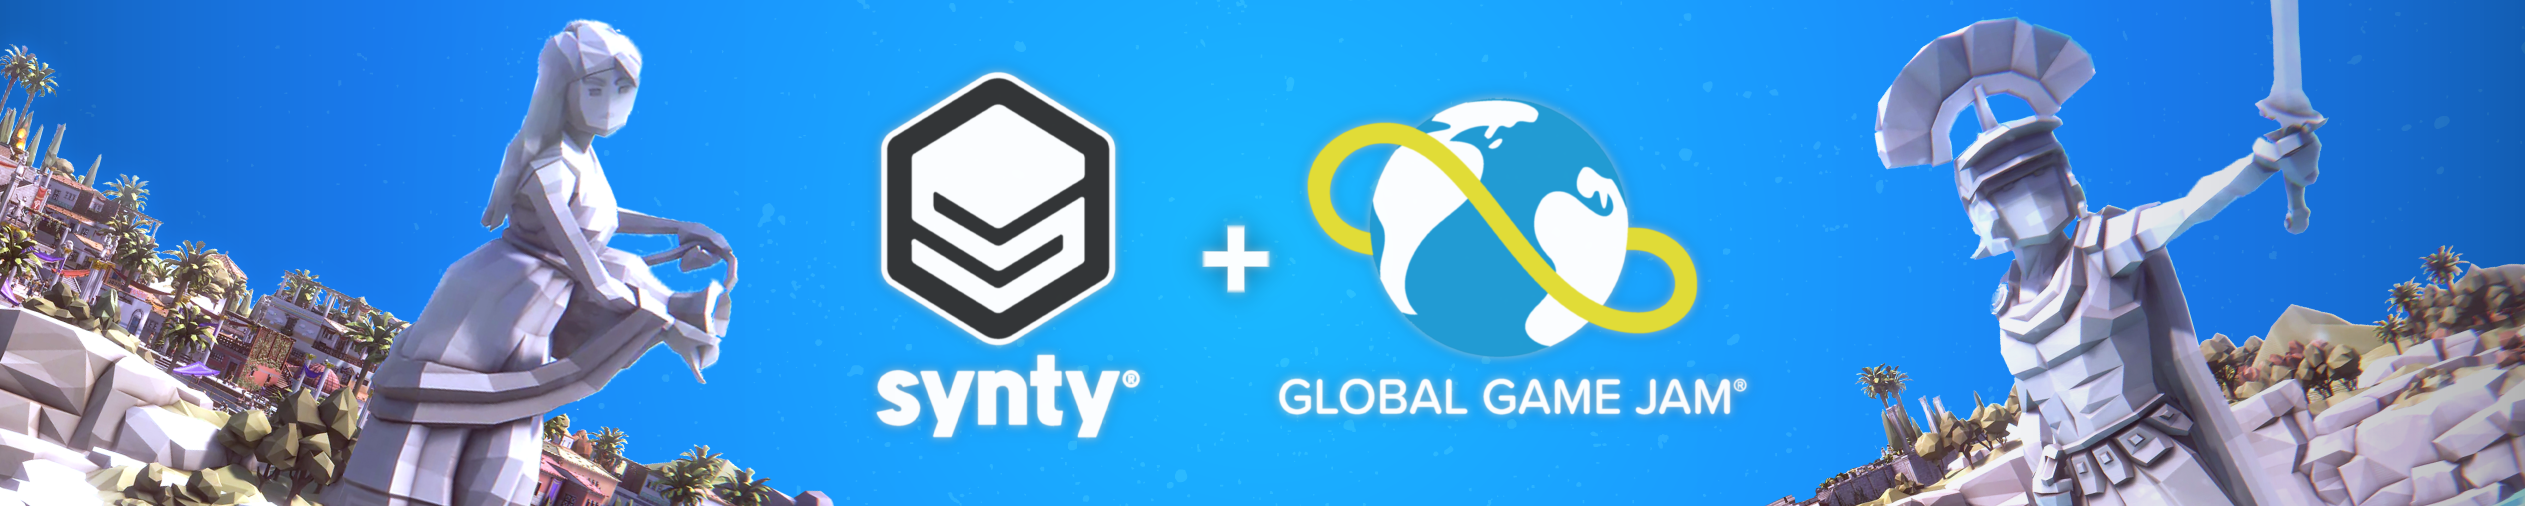 Global Game Jam Synty sponsorship banner